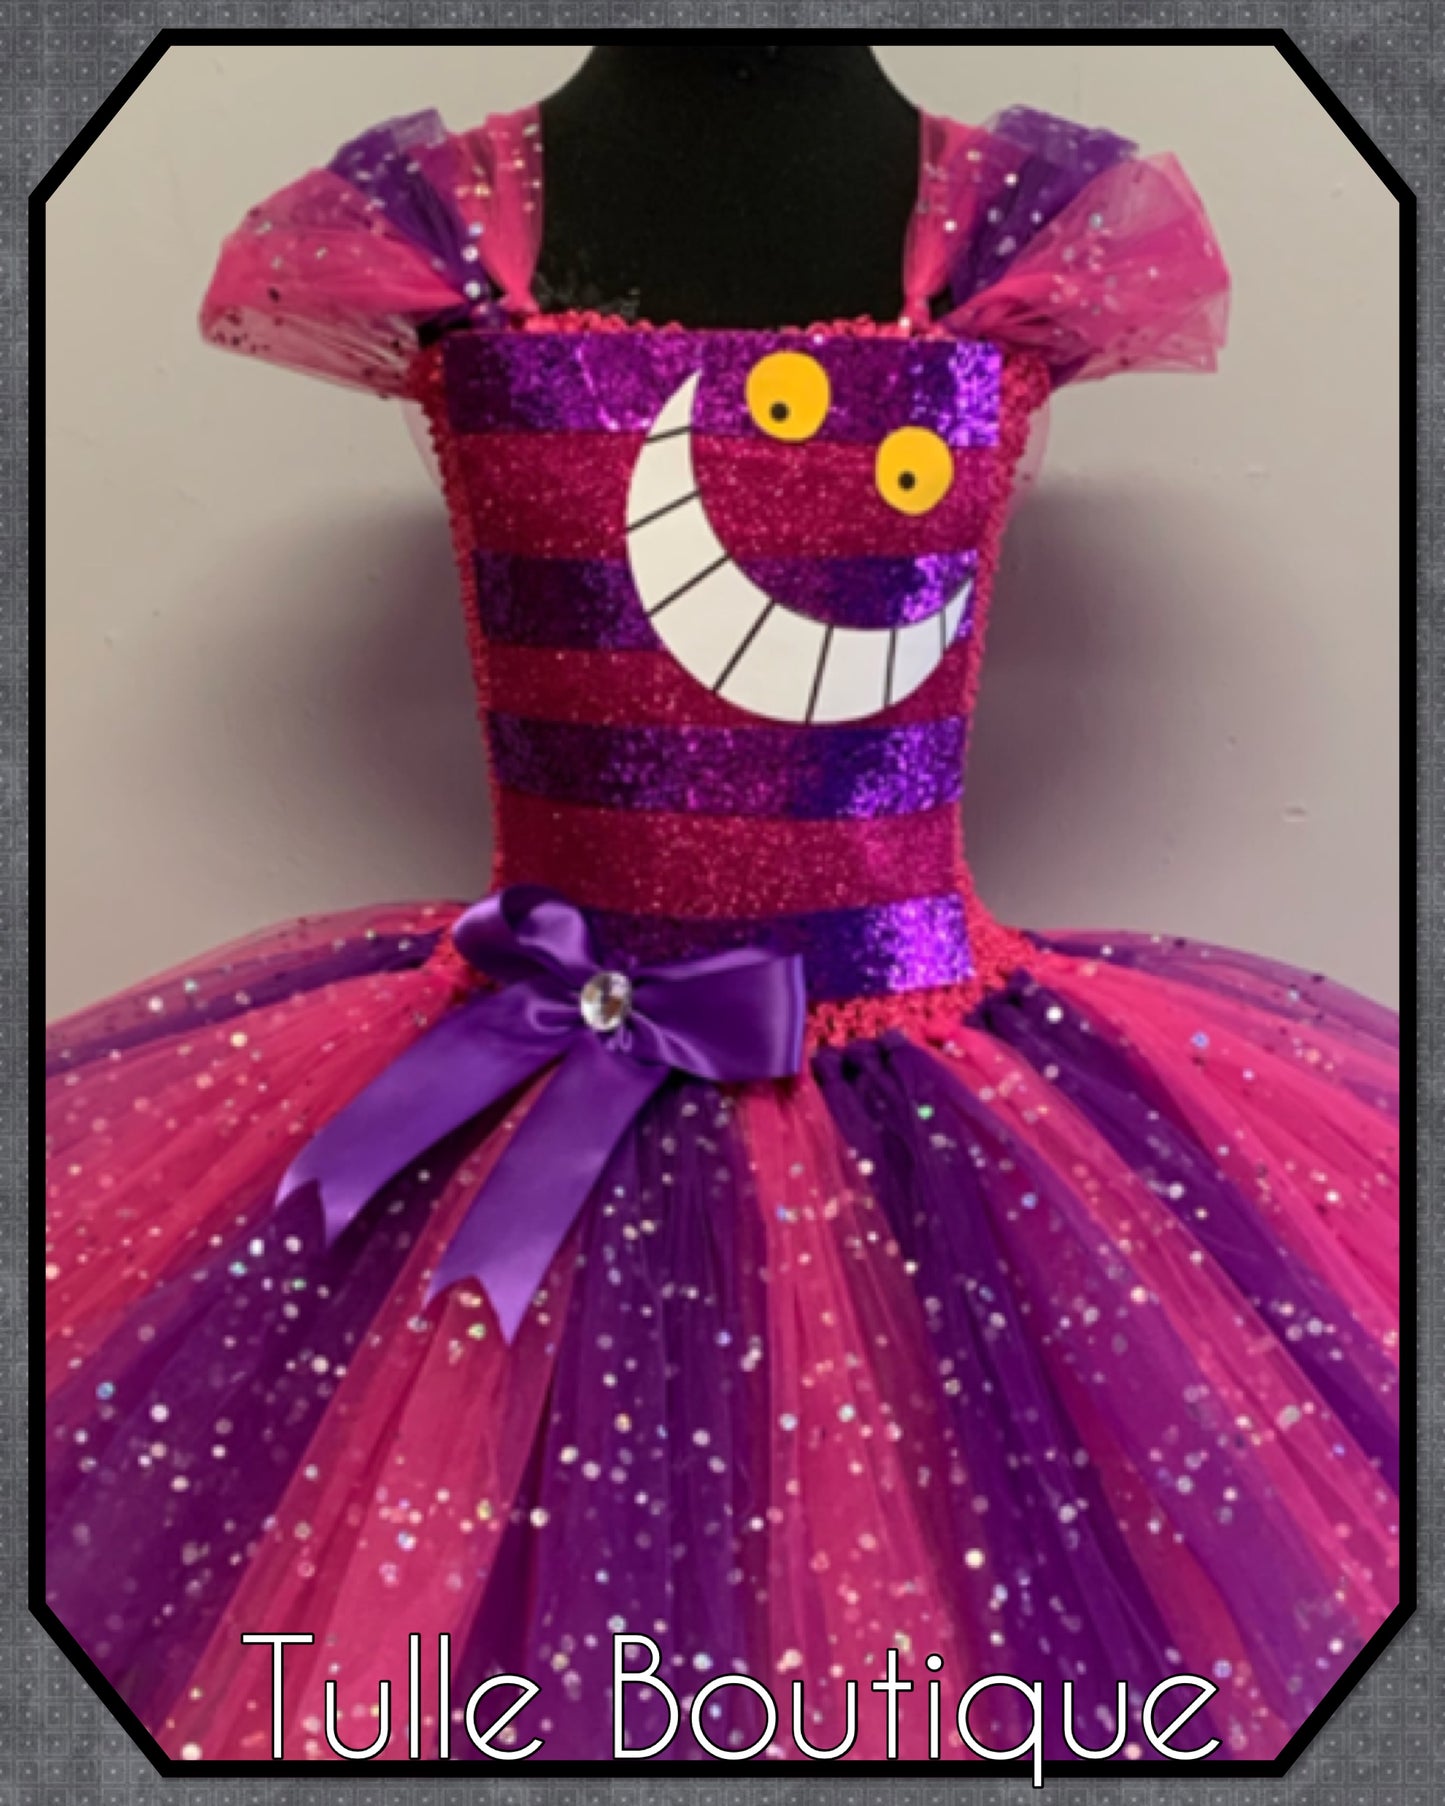 Cheshire Cat world book day birthday tutu dress